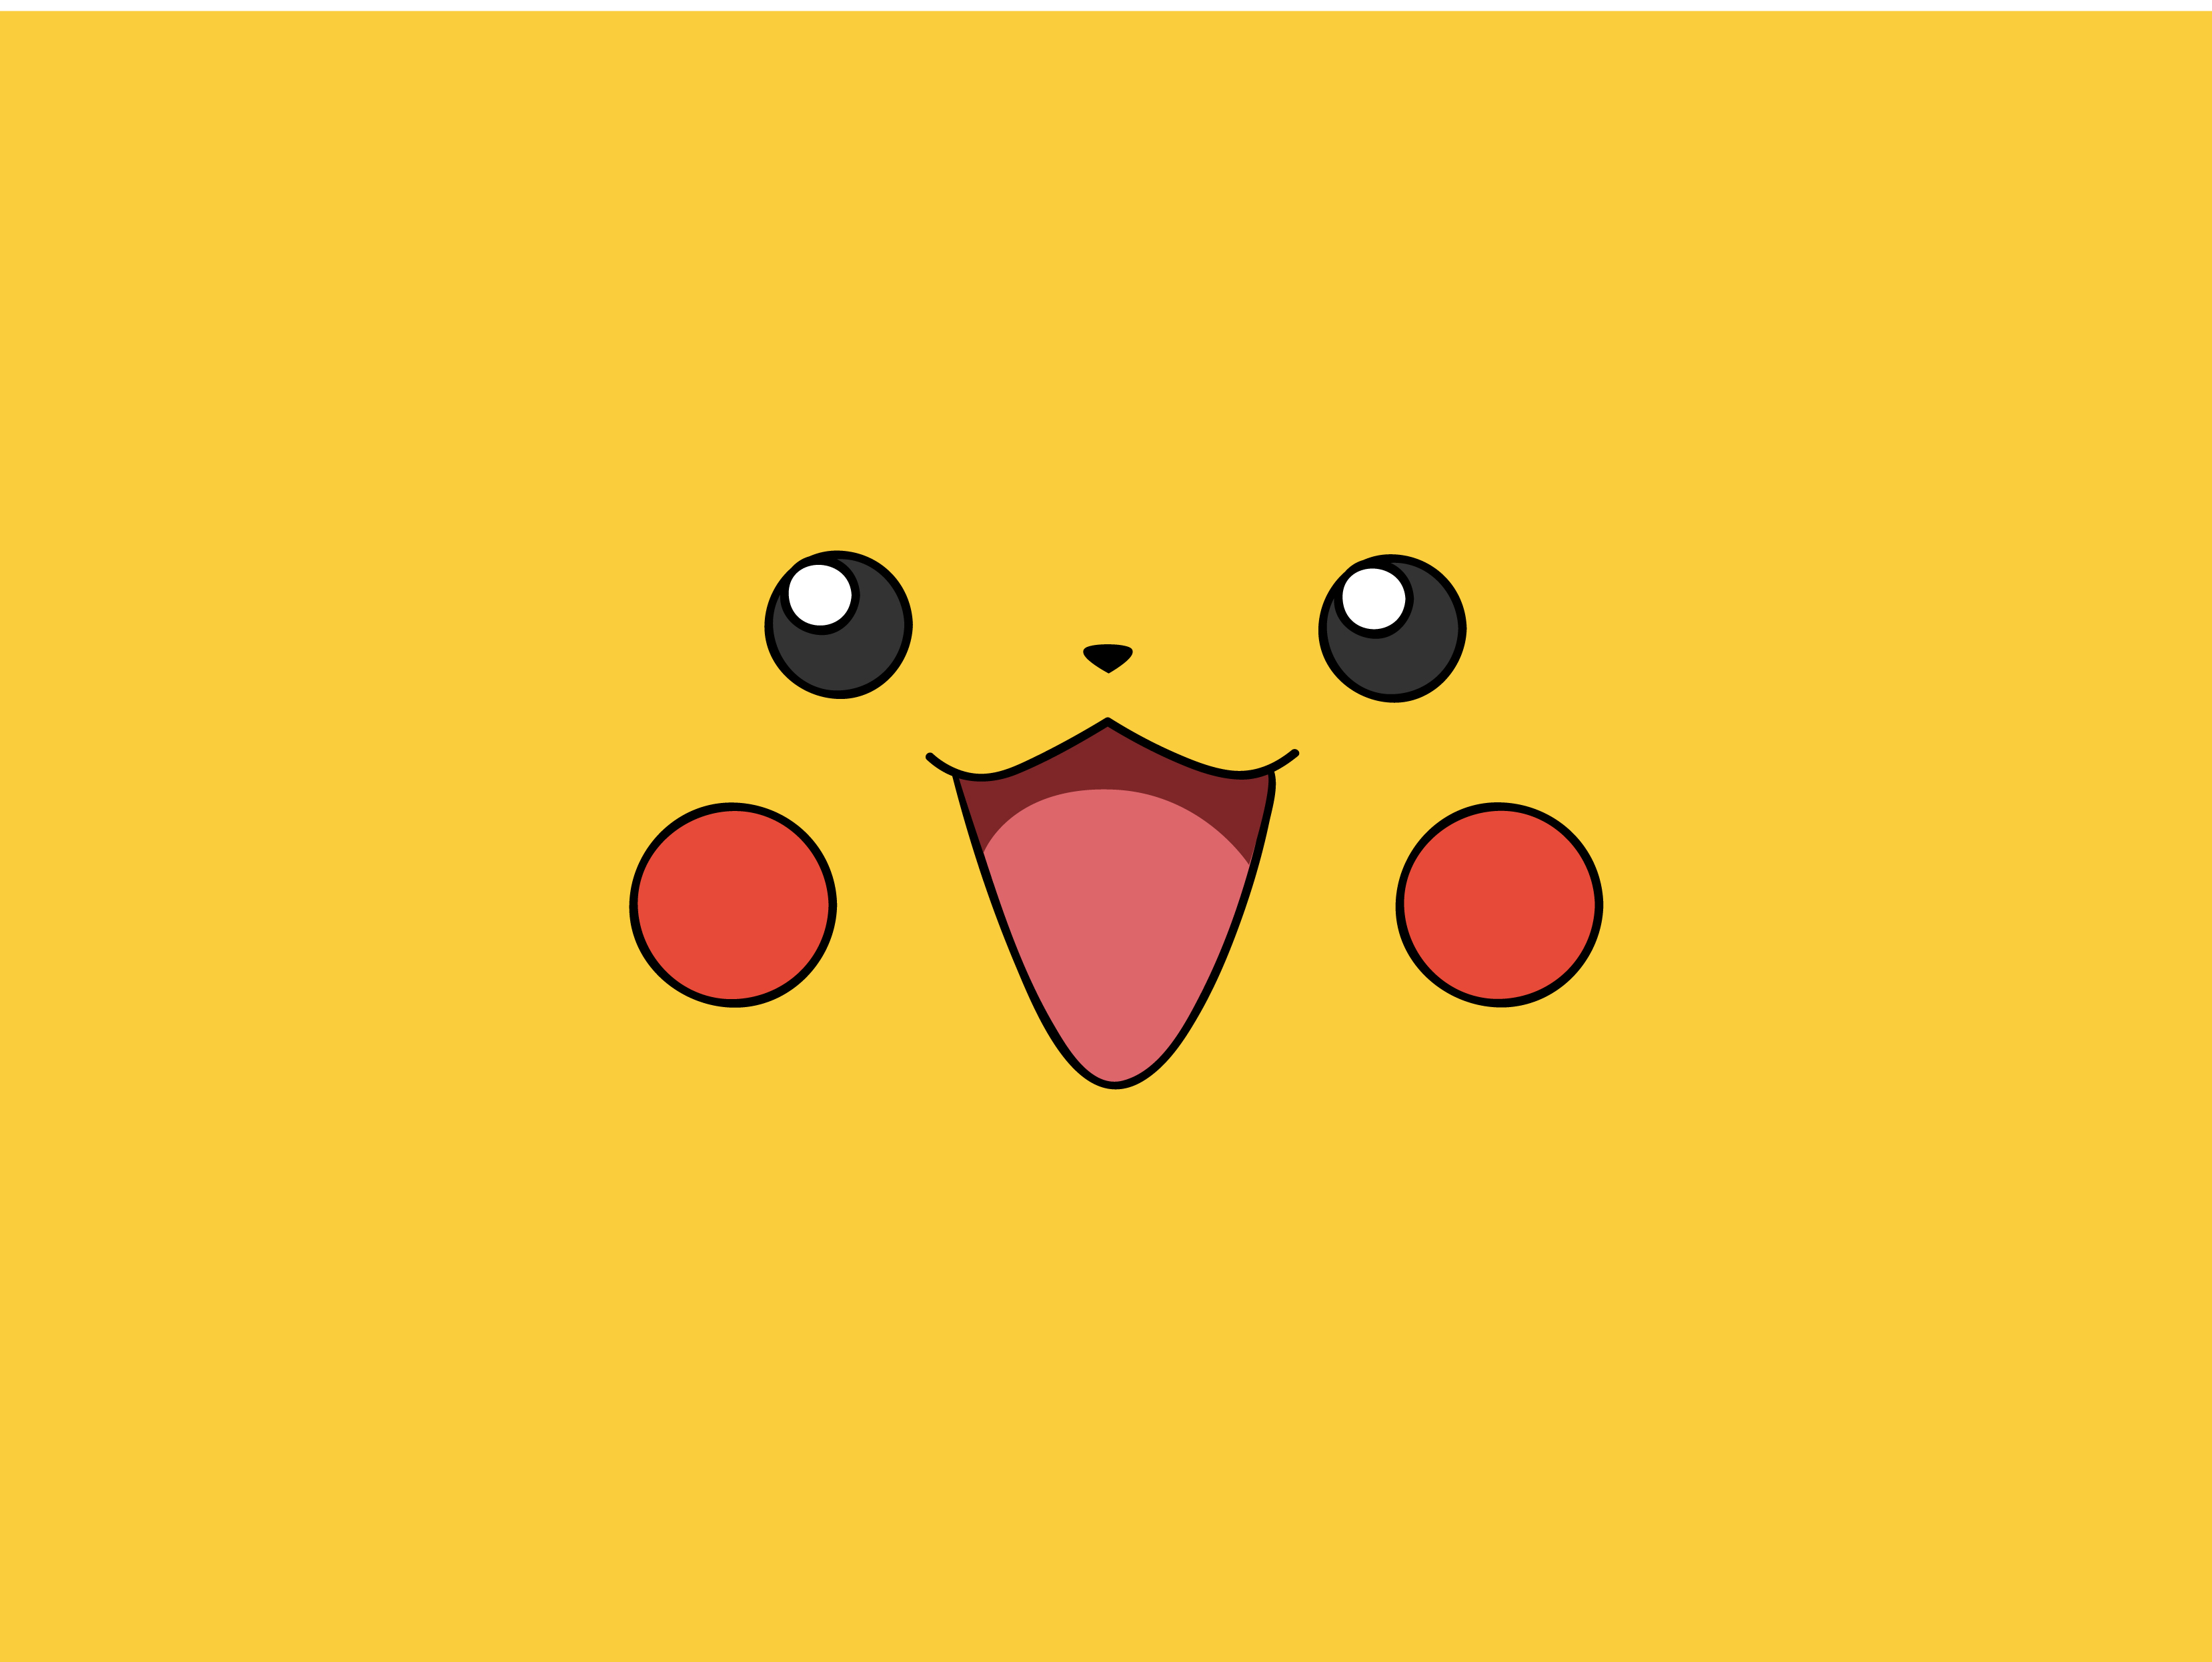 Hãy sử dụng hình nền Pikachu màu vàng để thể hiện tình yêu và niềm đam mê của mình đến với thế giới Pokemon. Với những chú Pikachu đáng yêu, màu sắc đầy sức sống cùng những vũ khí phản lực kì diệu, bạn sẽ có thể trở thành một huyền thoại trong cộng đồng chơi game Pokemon đấy.